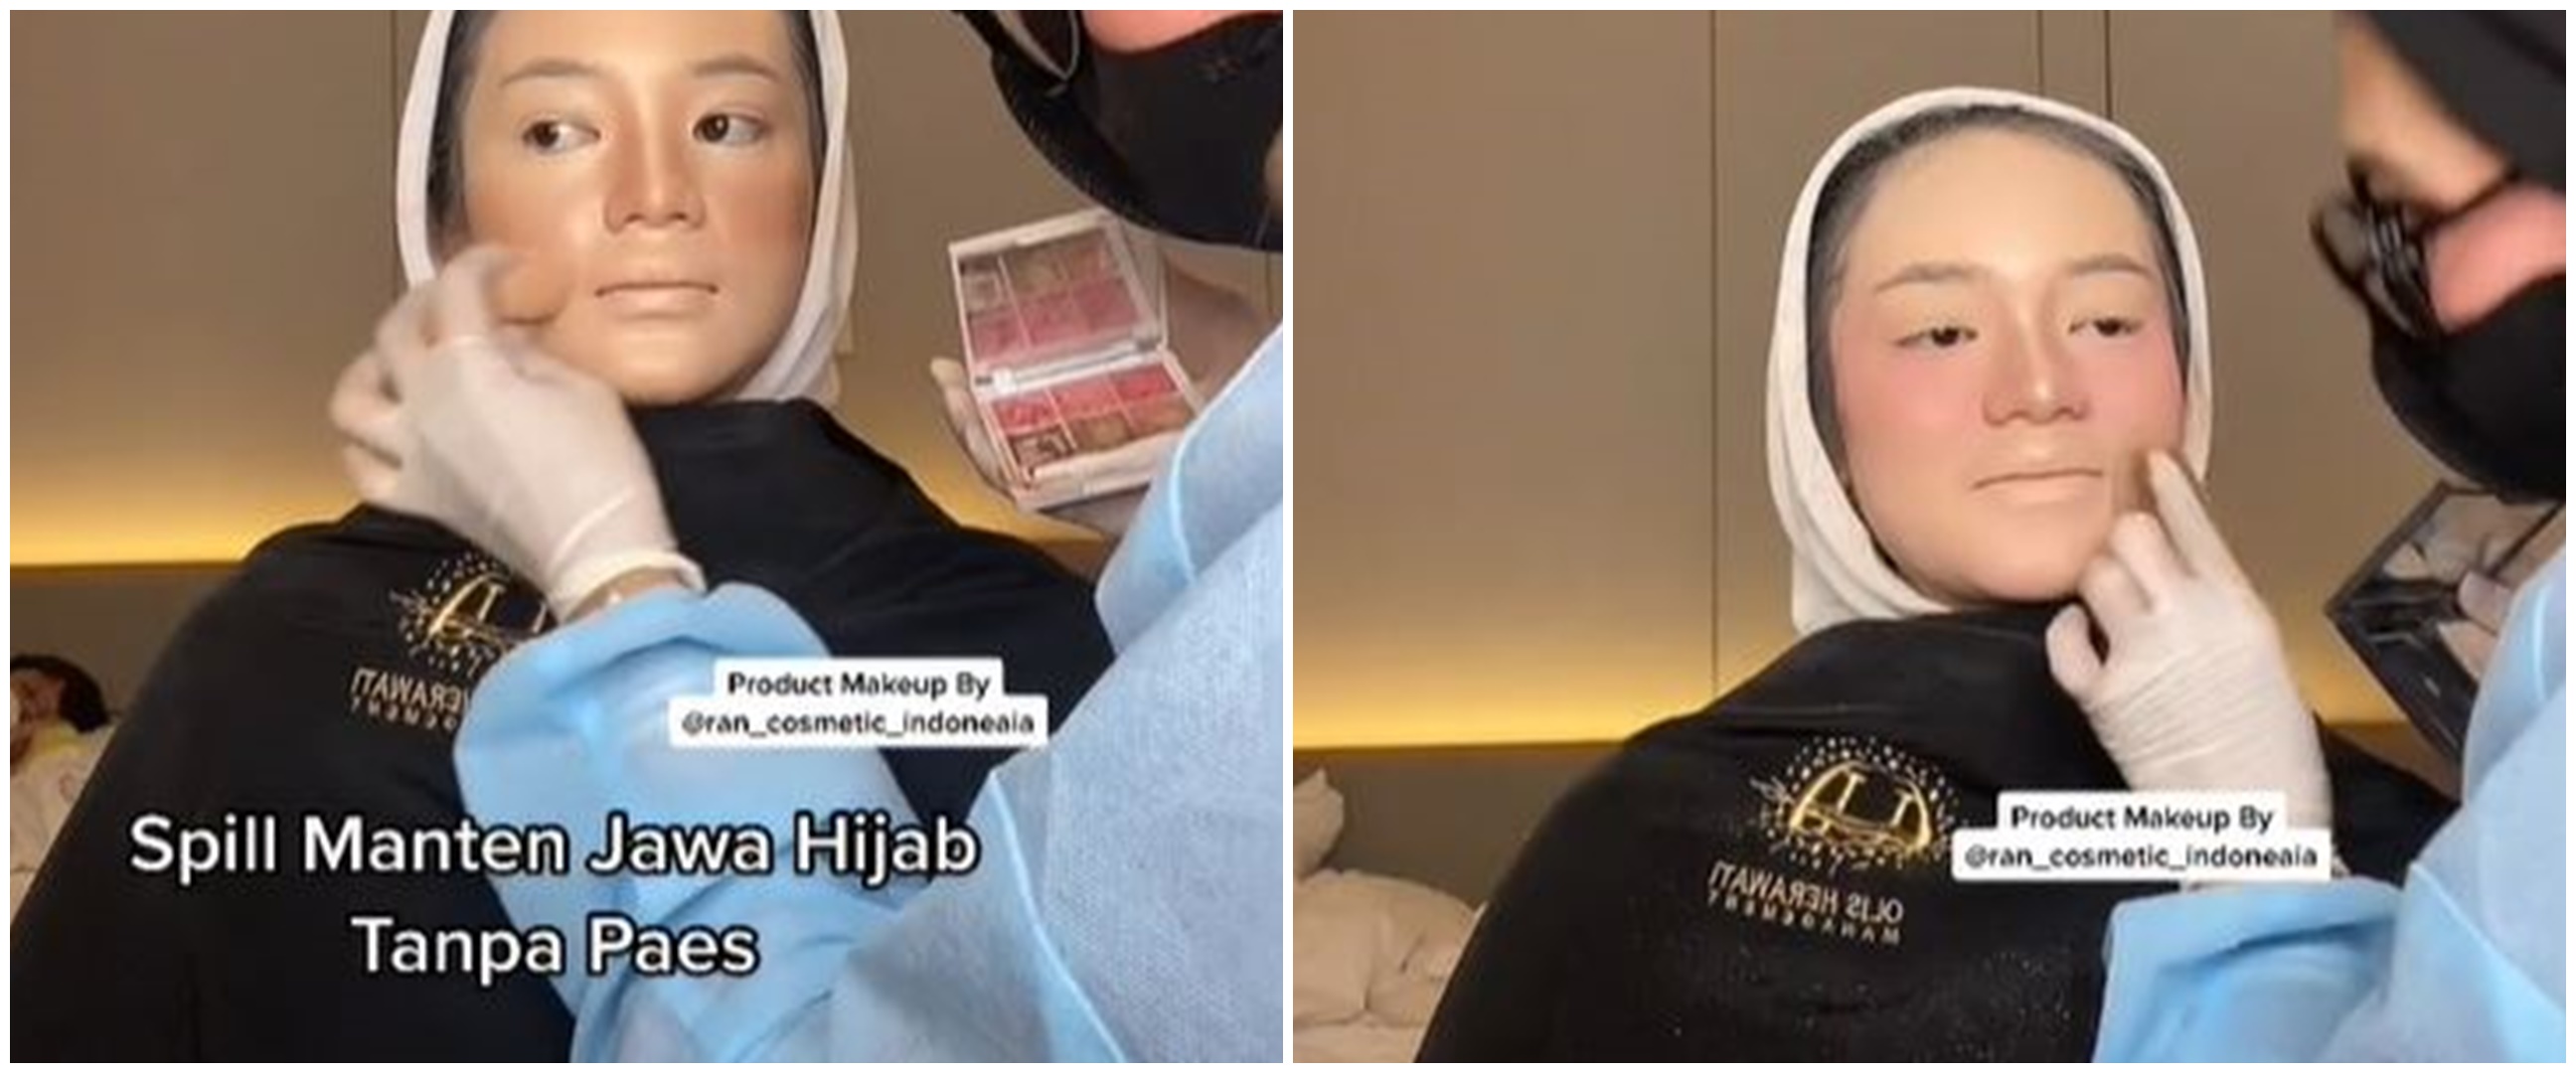 Transformasi manten Jawa hijab usai dirias MUA ini bikin takjub, tanpa paes bisa tampil manglingi